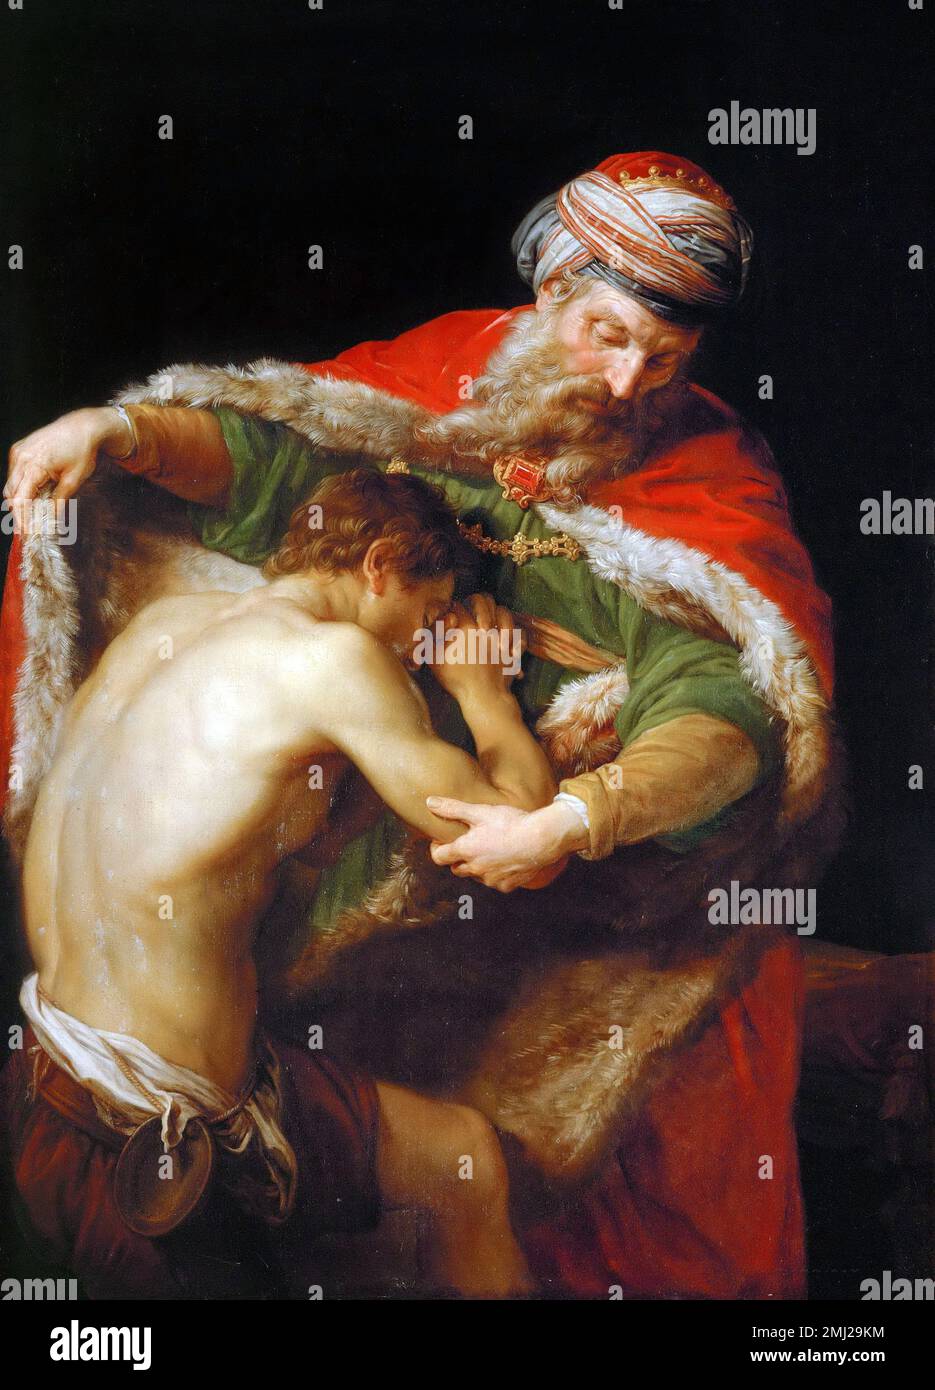 Pompeo Batoni. Le retour du fils prodigue par l'artiste italien Pompeo Girolamo Batoni (1708-1787), huile sur toile, 1773 Banque D'Images